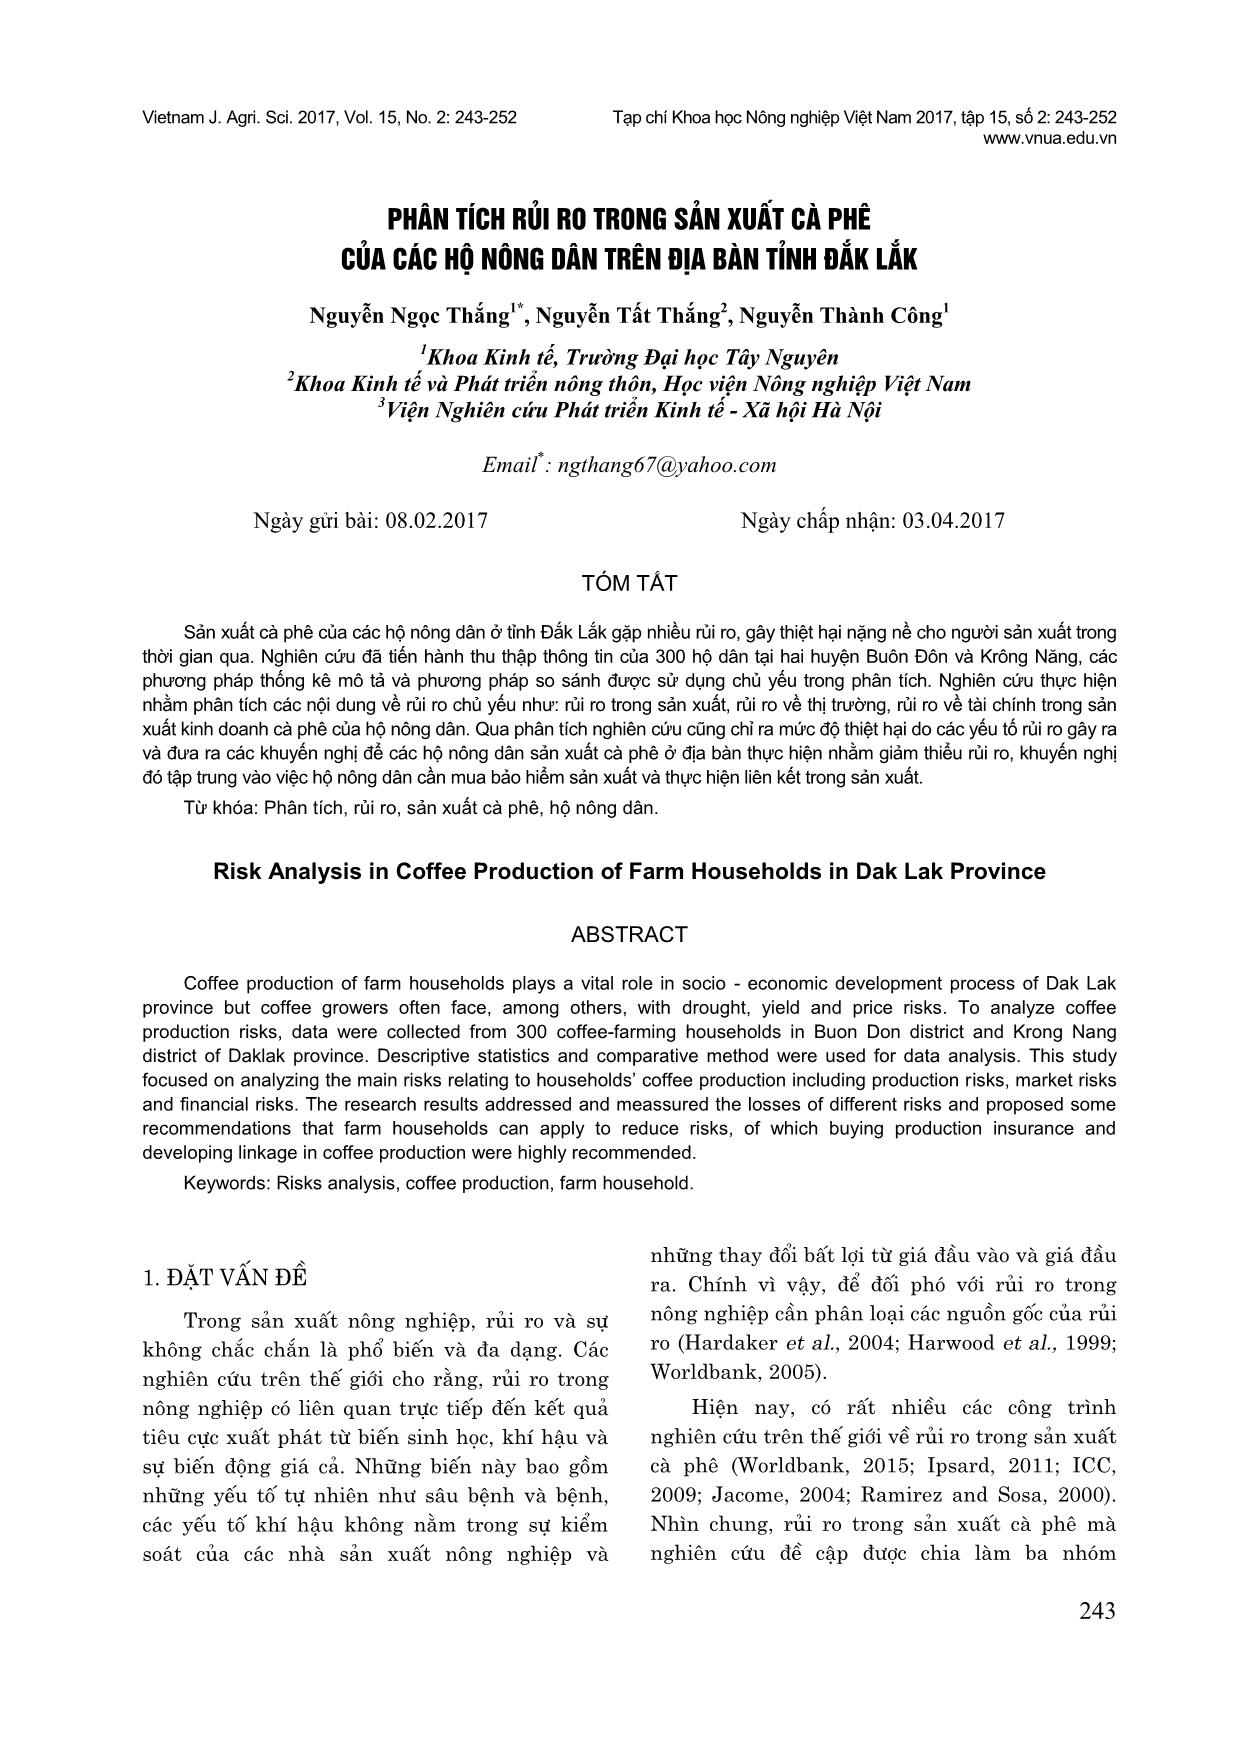 Phân tích rủi ro trong sản xuất cà phê của các hộ nông dân trên địa bàn tỉnh Đắk Lắk trang 1